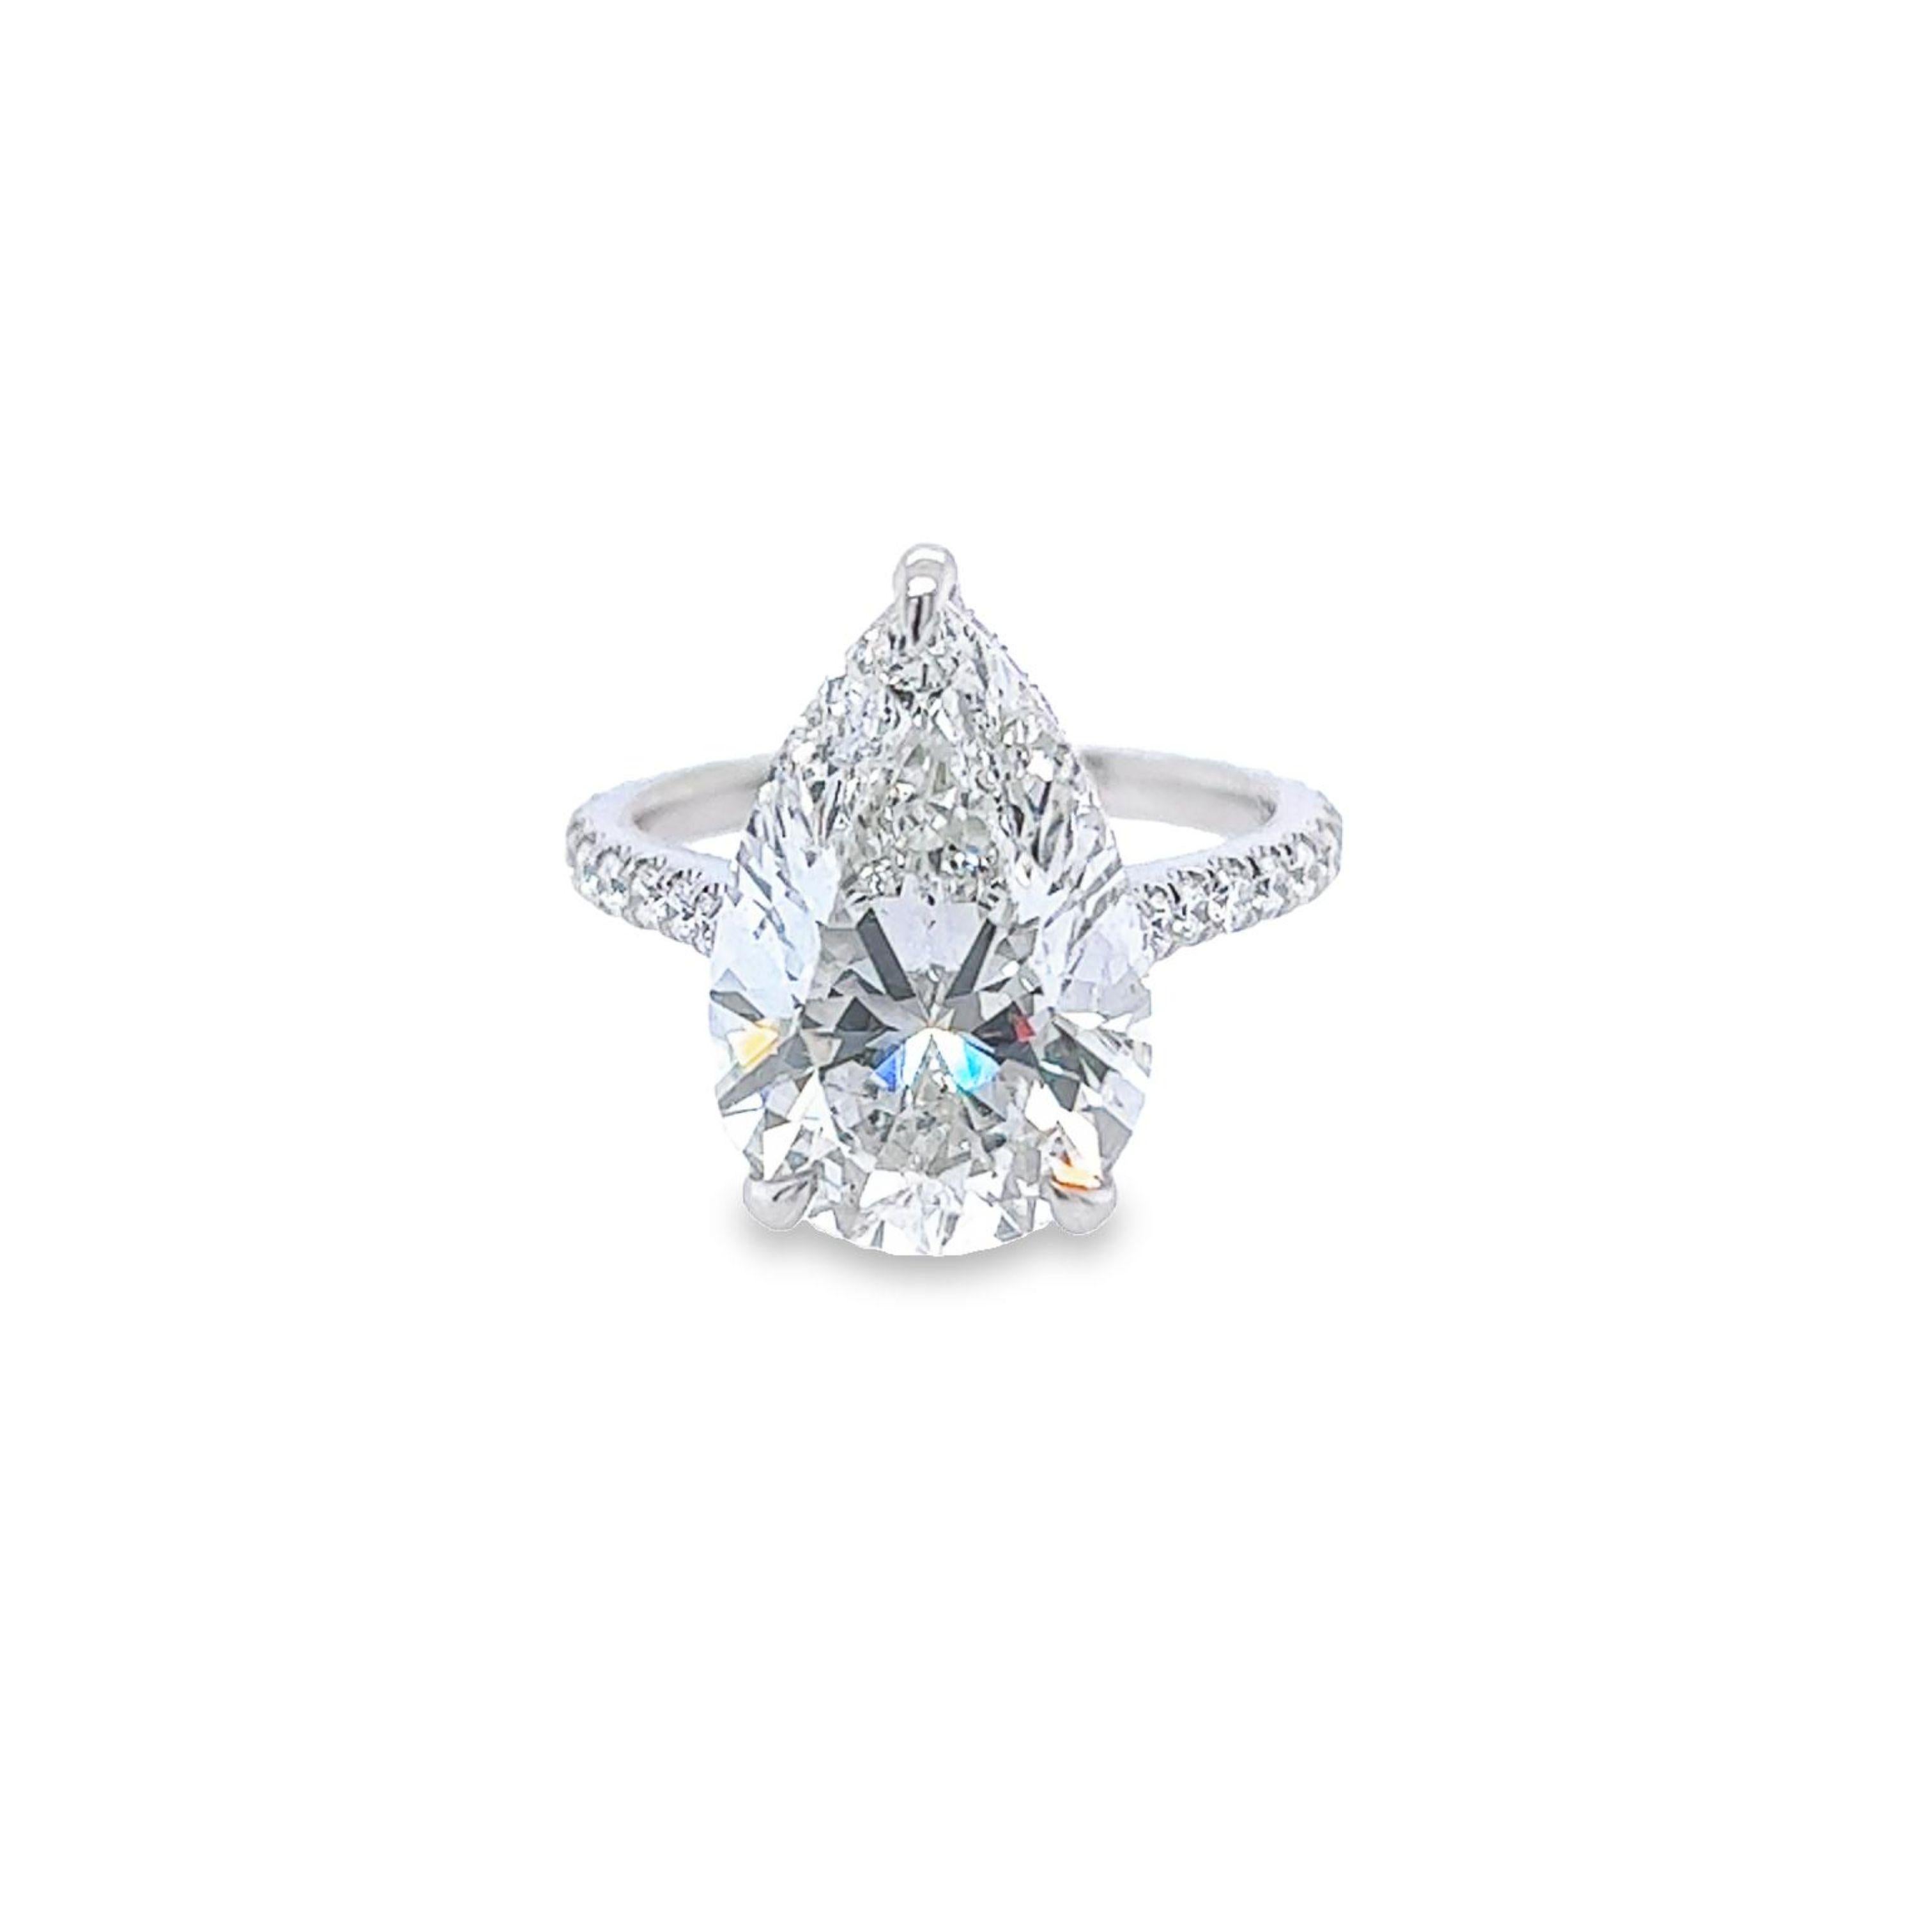 Rosenberg Diamonds & Co. 7,04 Karat Birnenform H Farbe SI1 Klarheit wird von einem GIA-Zertifikat begleitet. Diese außergewöhnliche SI1-Birnenform ist voller Brillanz und wird in einer handgefertigten Platinfassung gefasst. Dieser Ring setzt seine